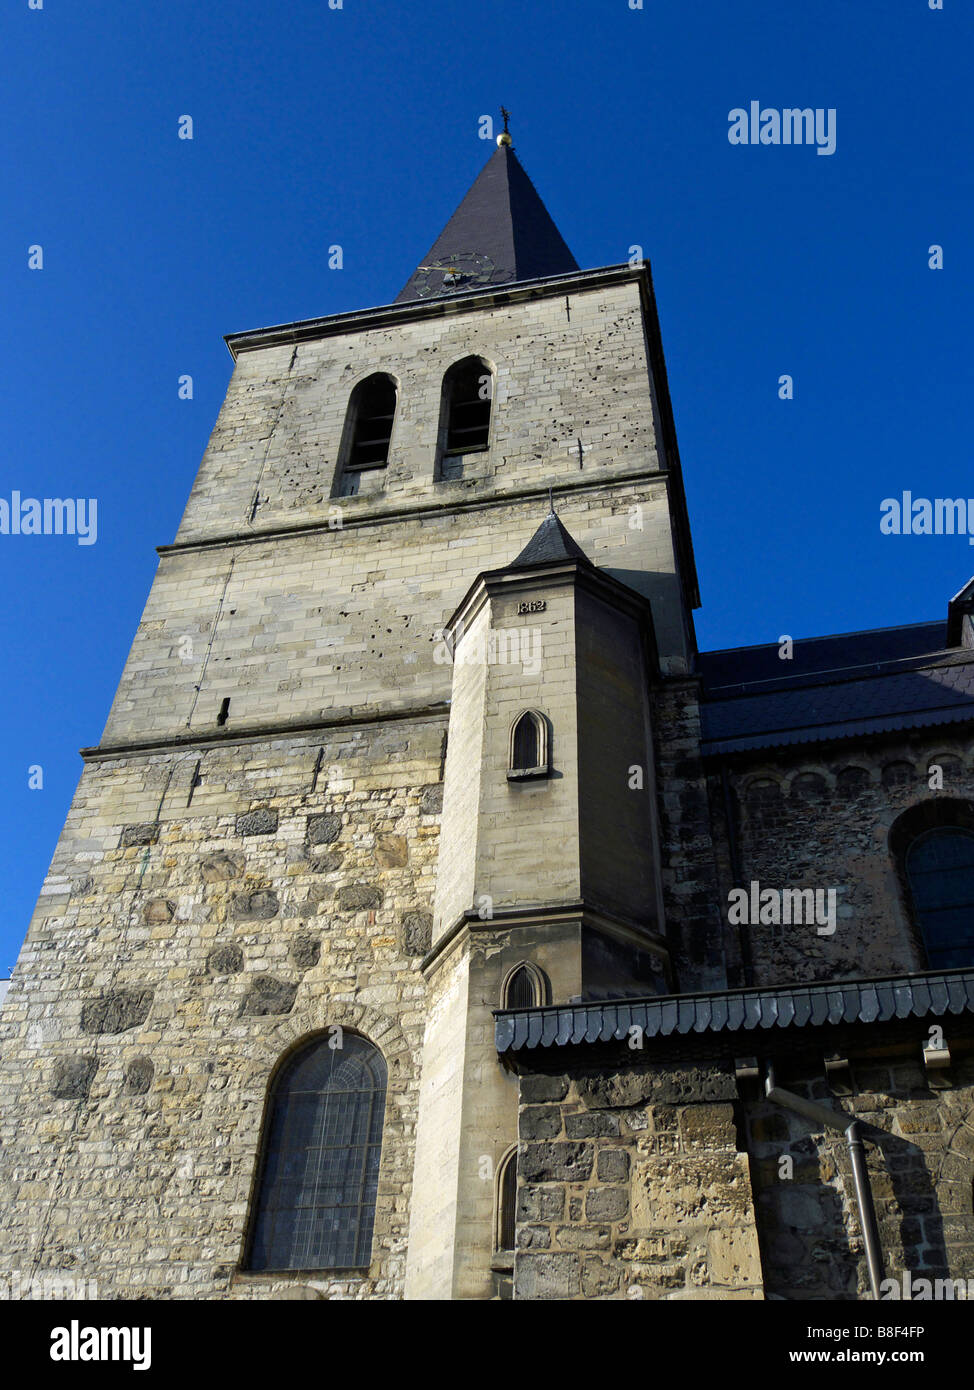 Pancratiuskerk, Heerlen, The Netherlands. Stock Photo